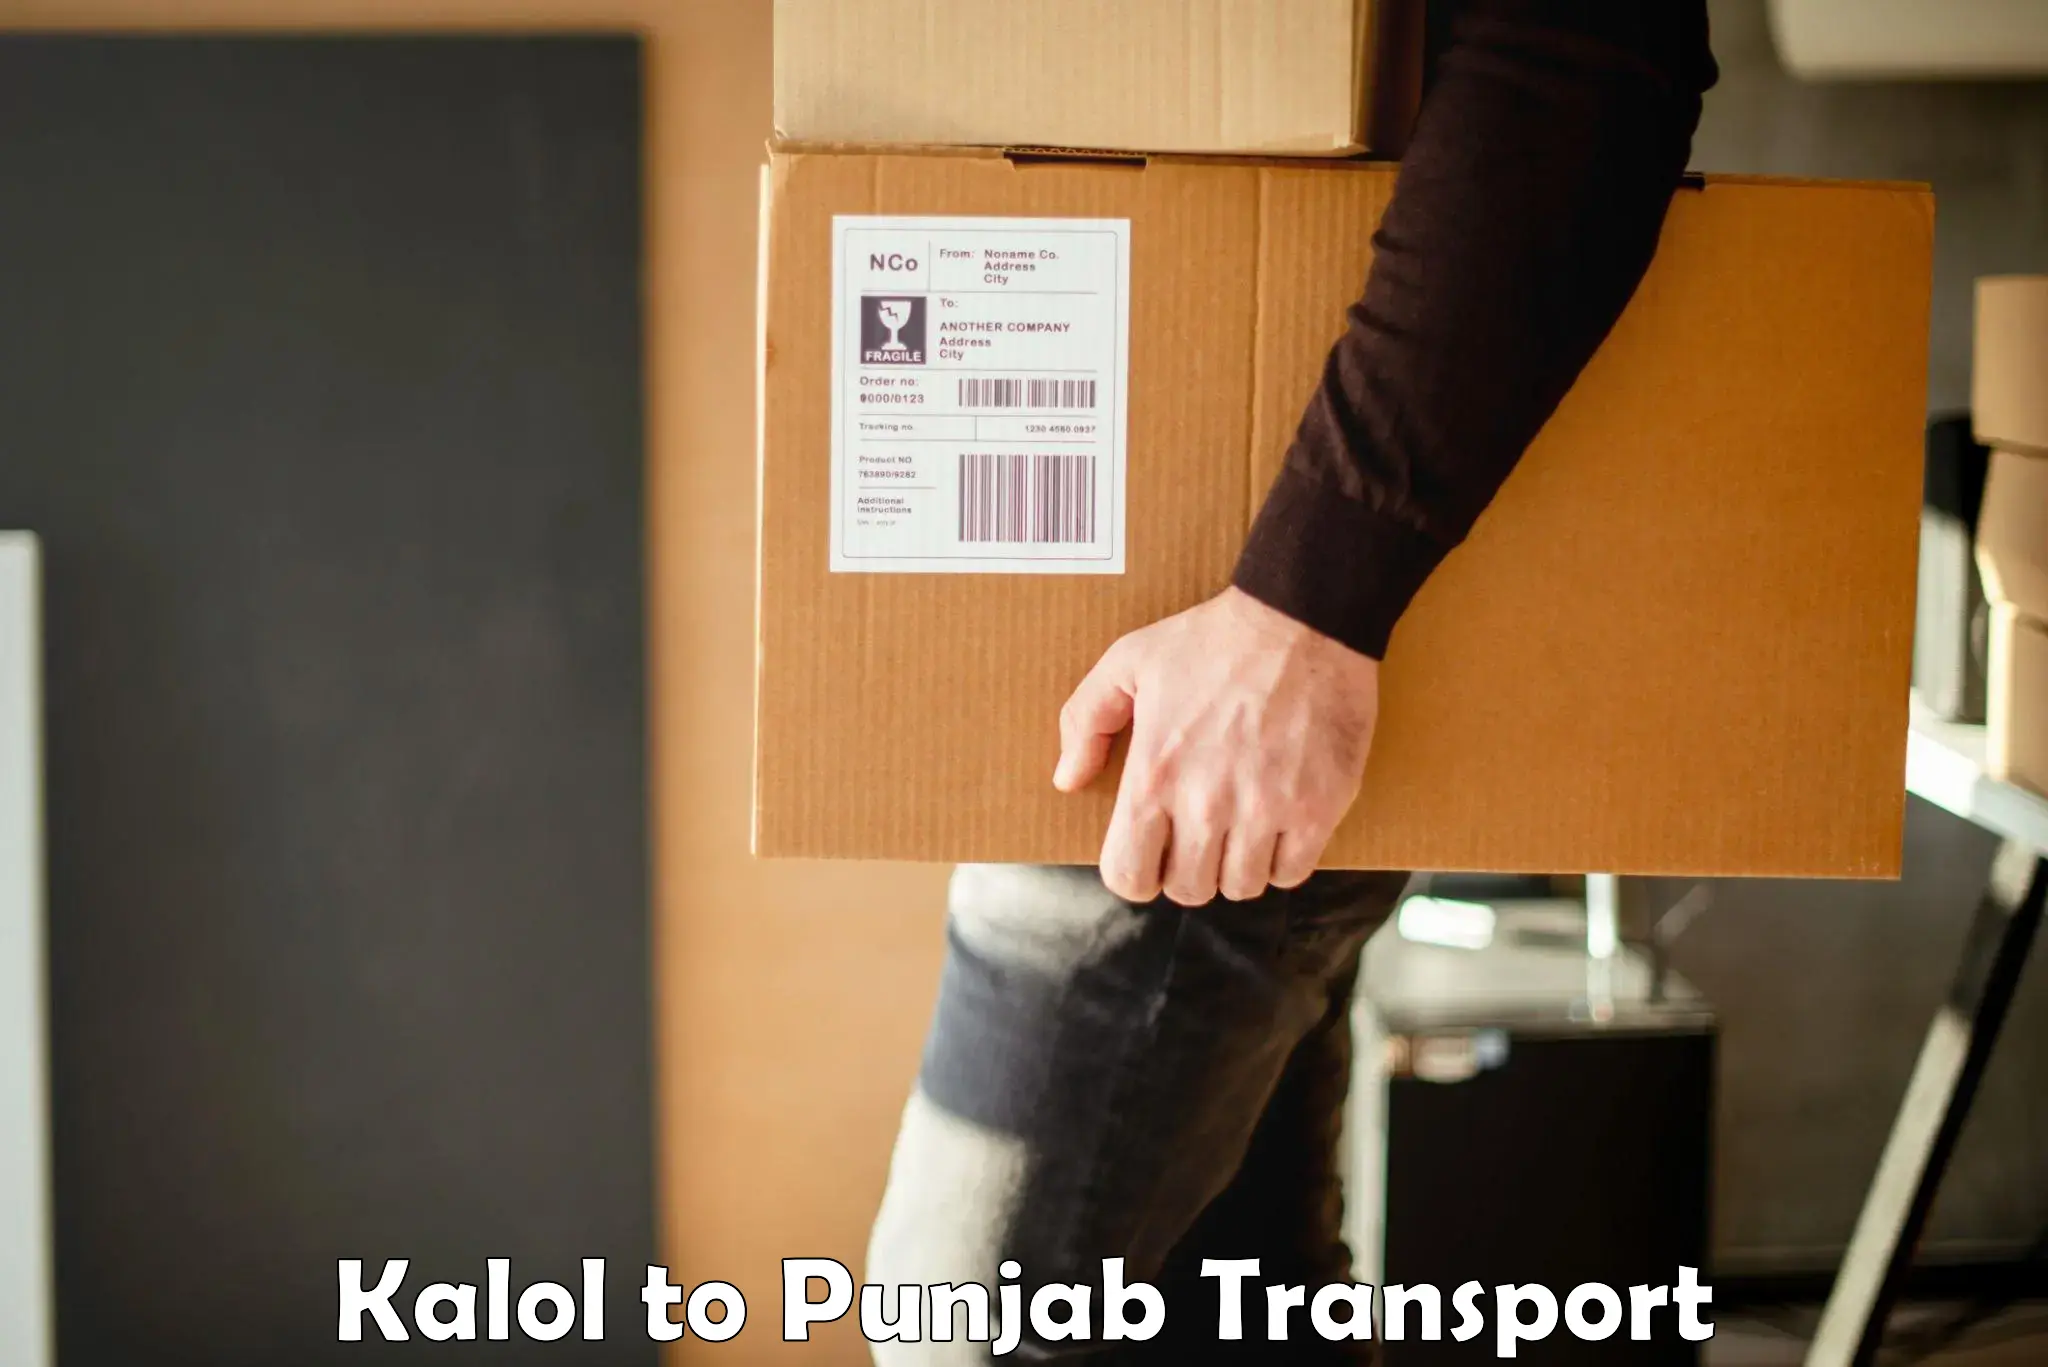 Two wheeler parcel service Kalol to Patiala